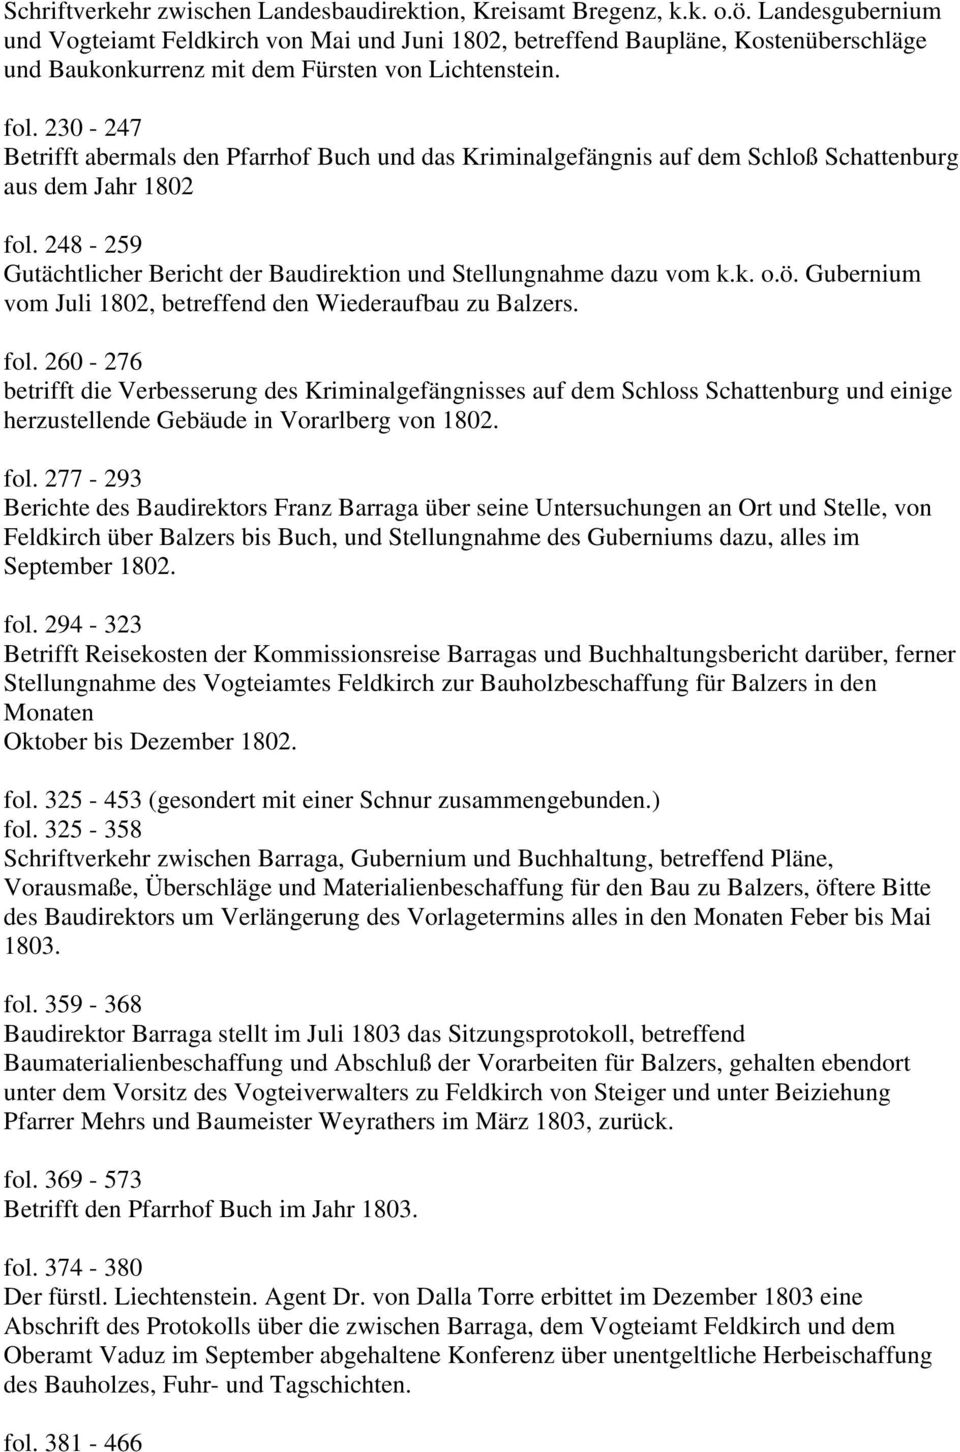 230-247 Betrifft abermals den Pfarrhof Buch und das Kriminalgefängnis auf dem Schloß Schattenburg aus dem Jahr 1802 fol. 248-259 Gutächtlicher Bericht der Baudirektion und Stellungnahme dazu vom k.k. o.